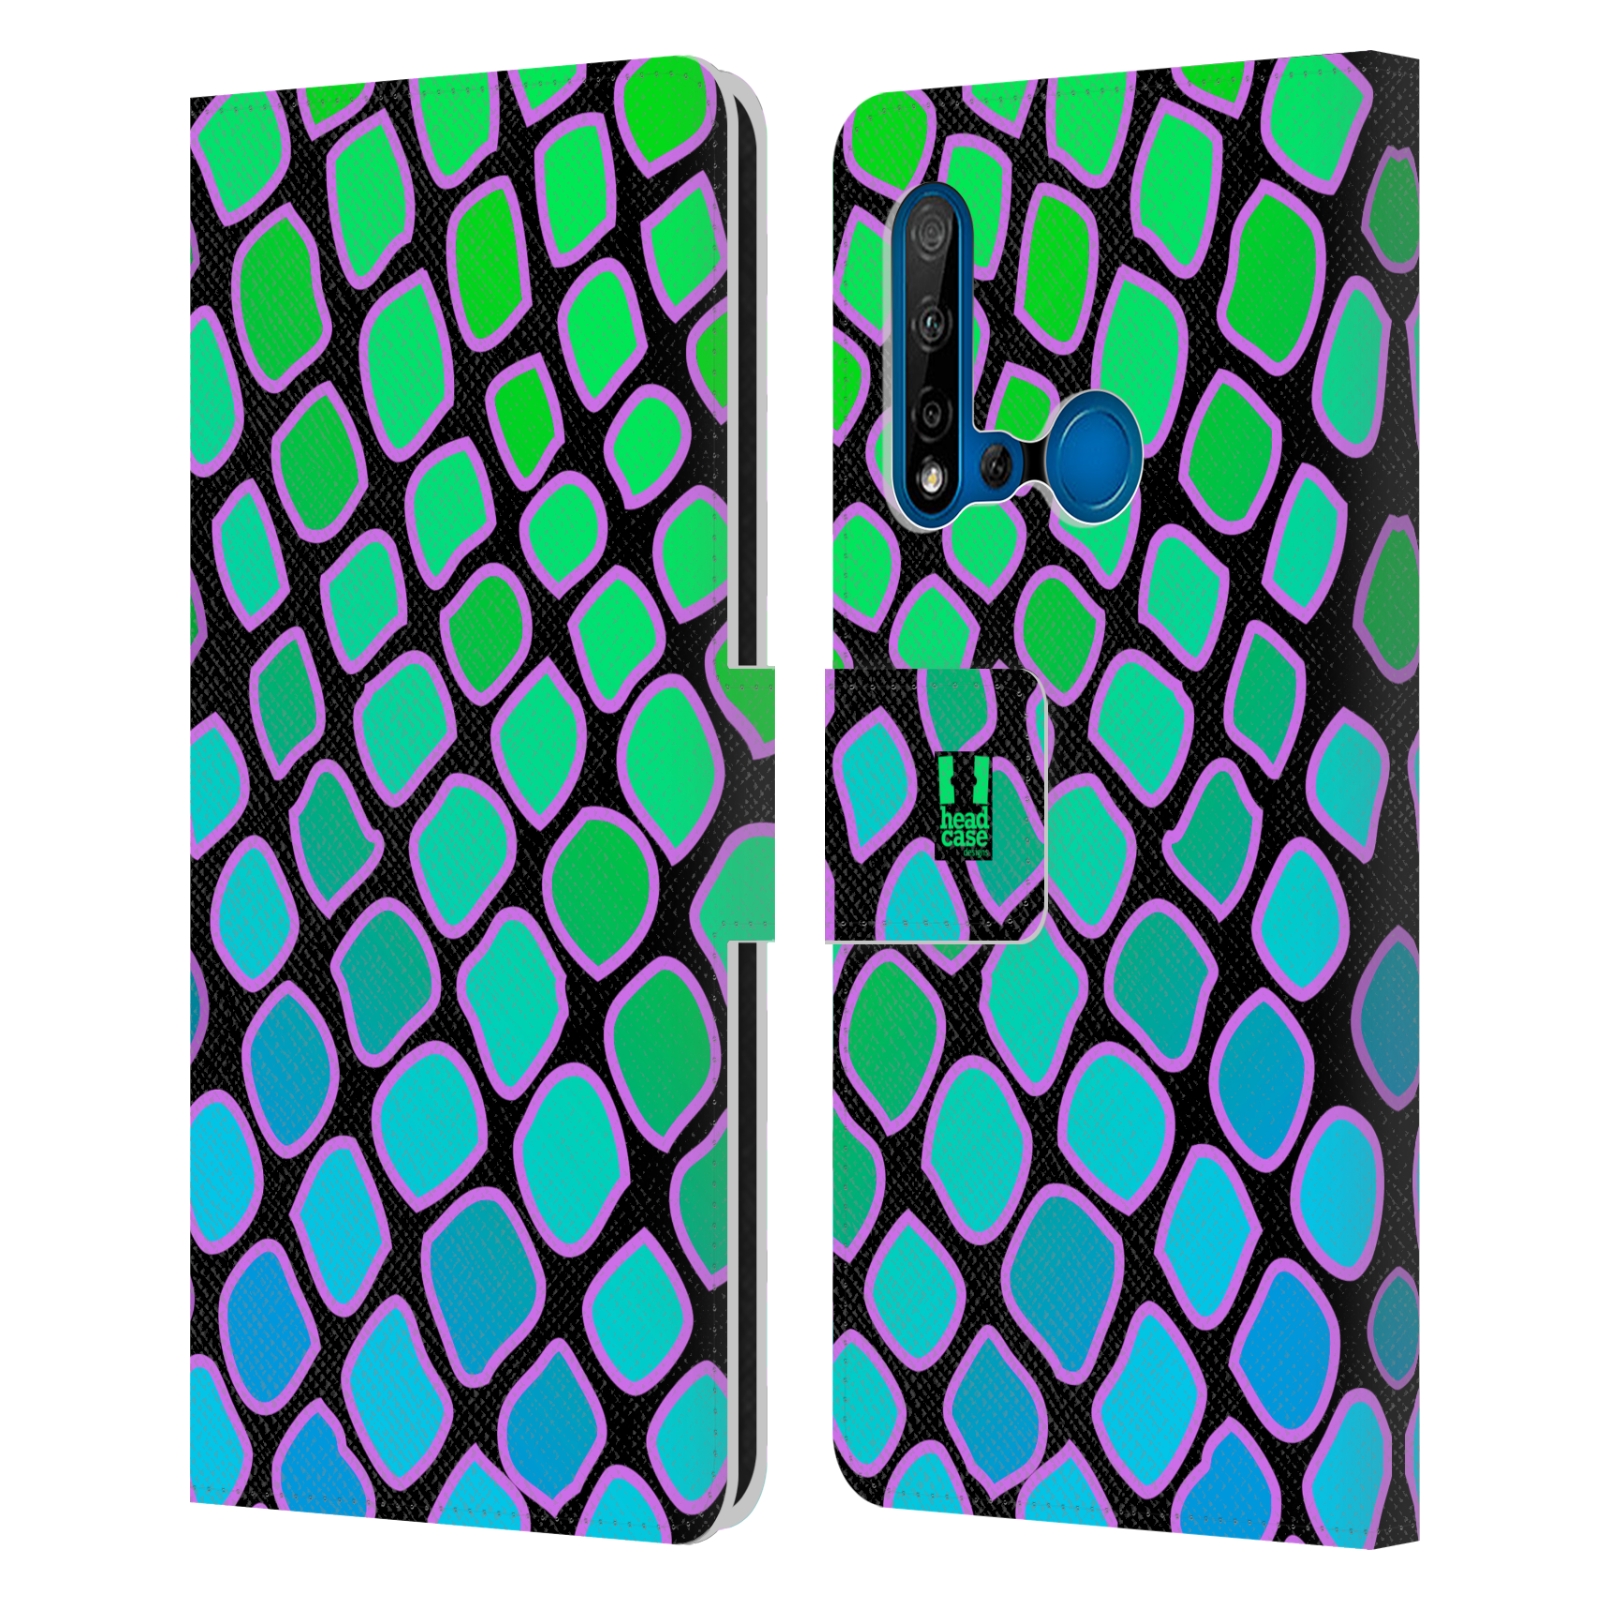 Pouzdro na mobil Huawei P20 LITE 2019 Zvířecí barevné vzory vodní had modrá a zelená barva AQUA